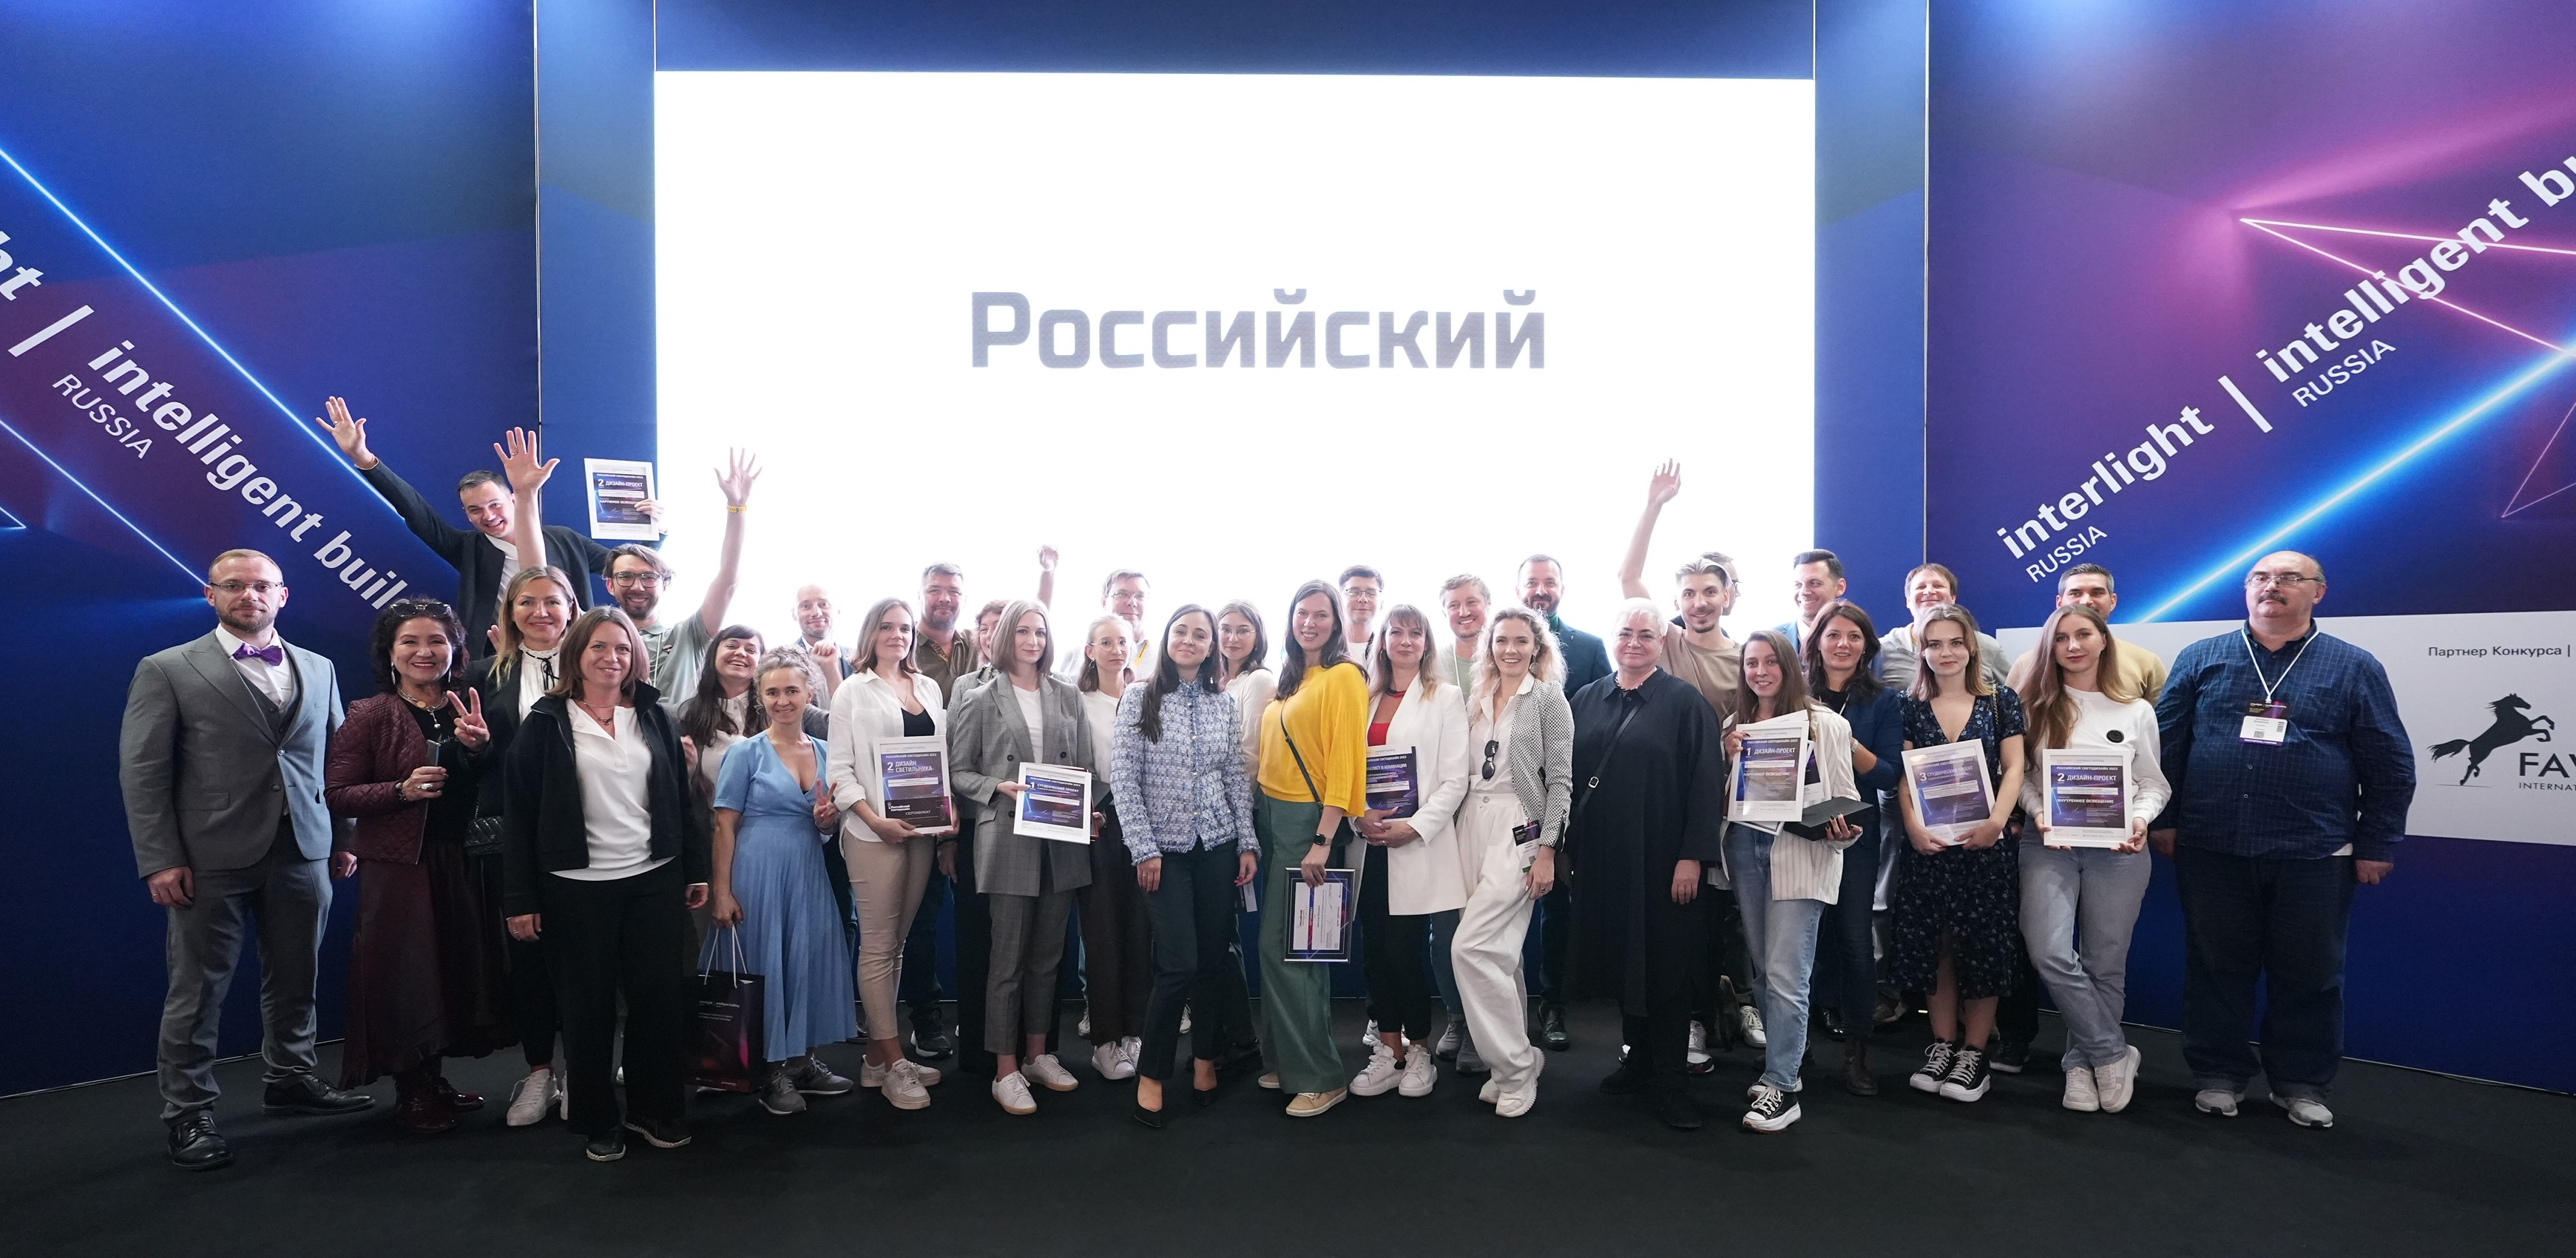 Результаты конкурса «Российский светодизайн»